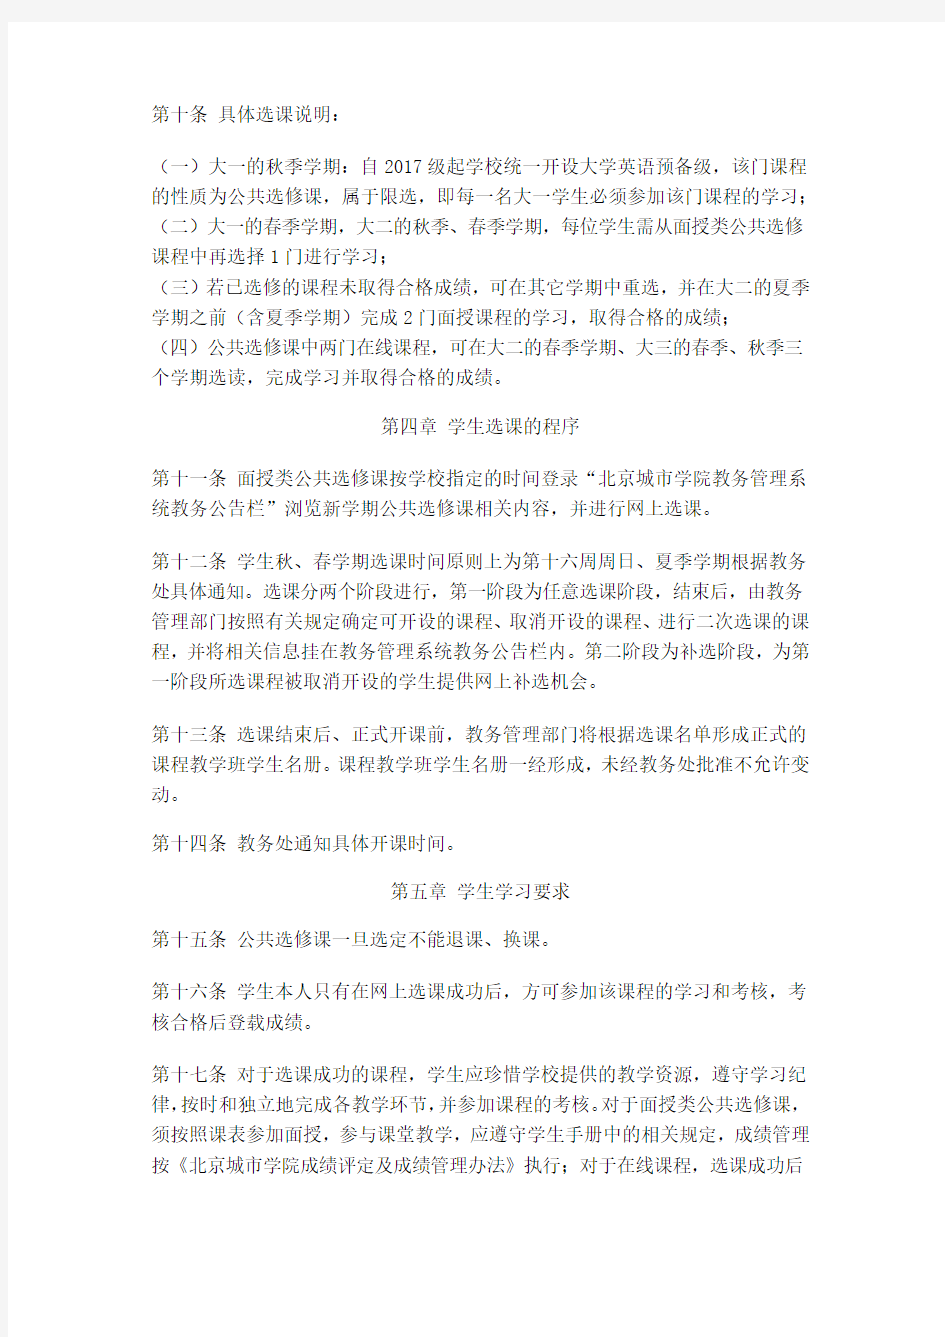 北京城市学院公共选修课学生选课管理办法(2017.9修订)